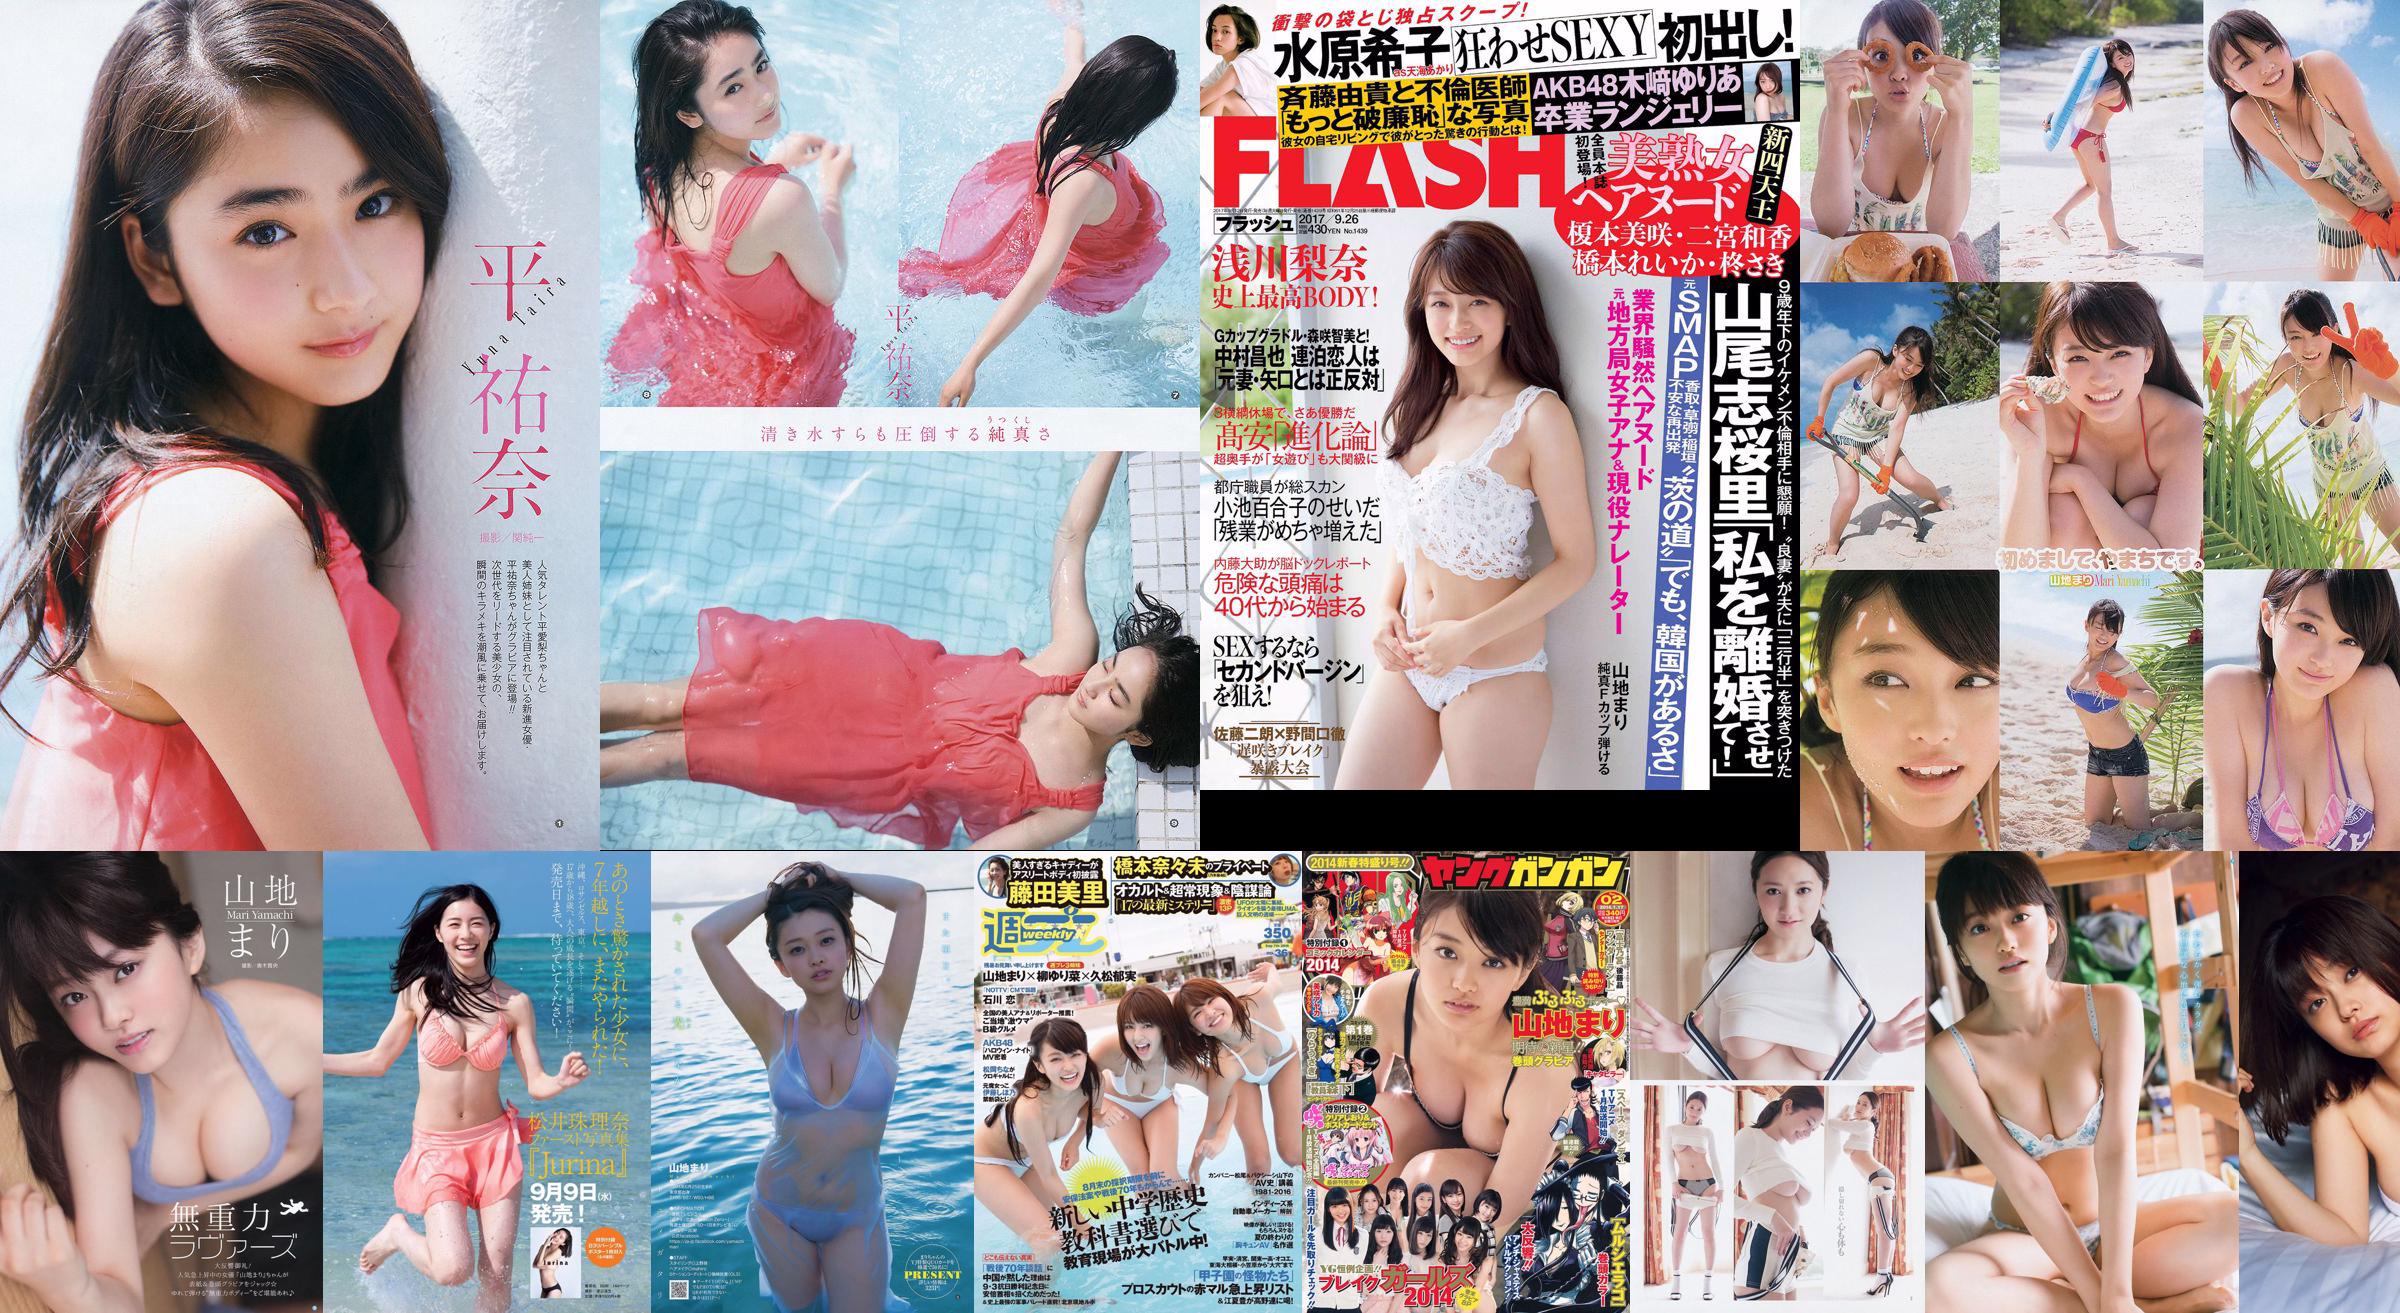 Mari Yamaji Yume Hazuki [每週一次的年輕跳] 2014 No.34照片 No.9a6513 第4頁